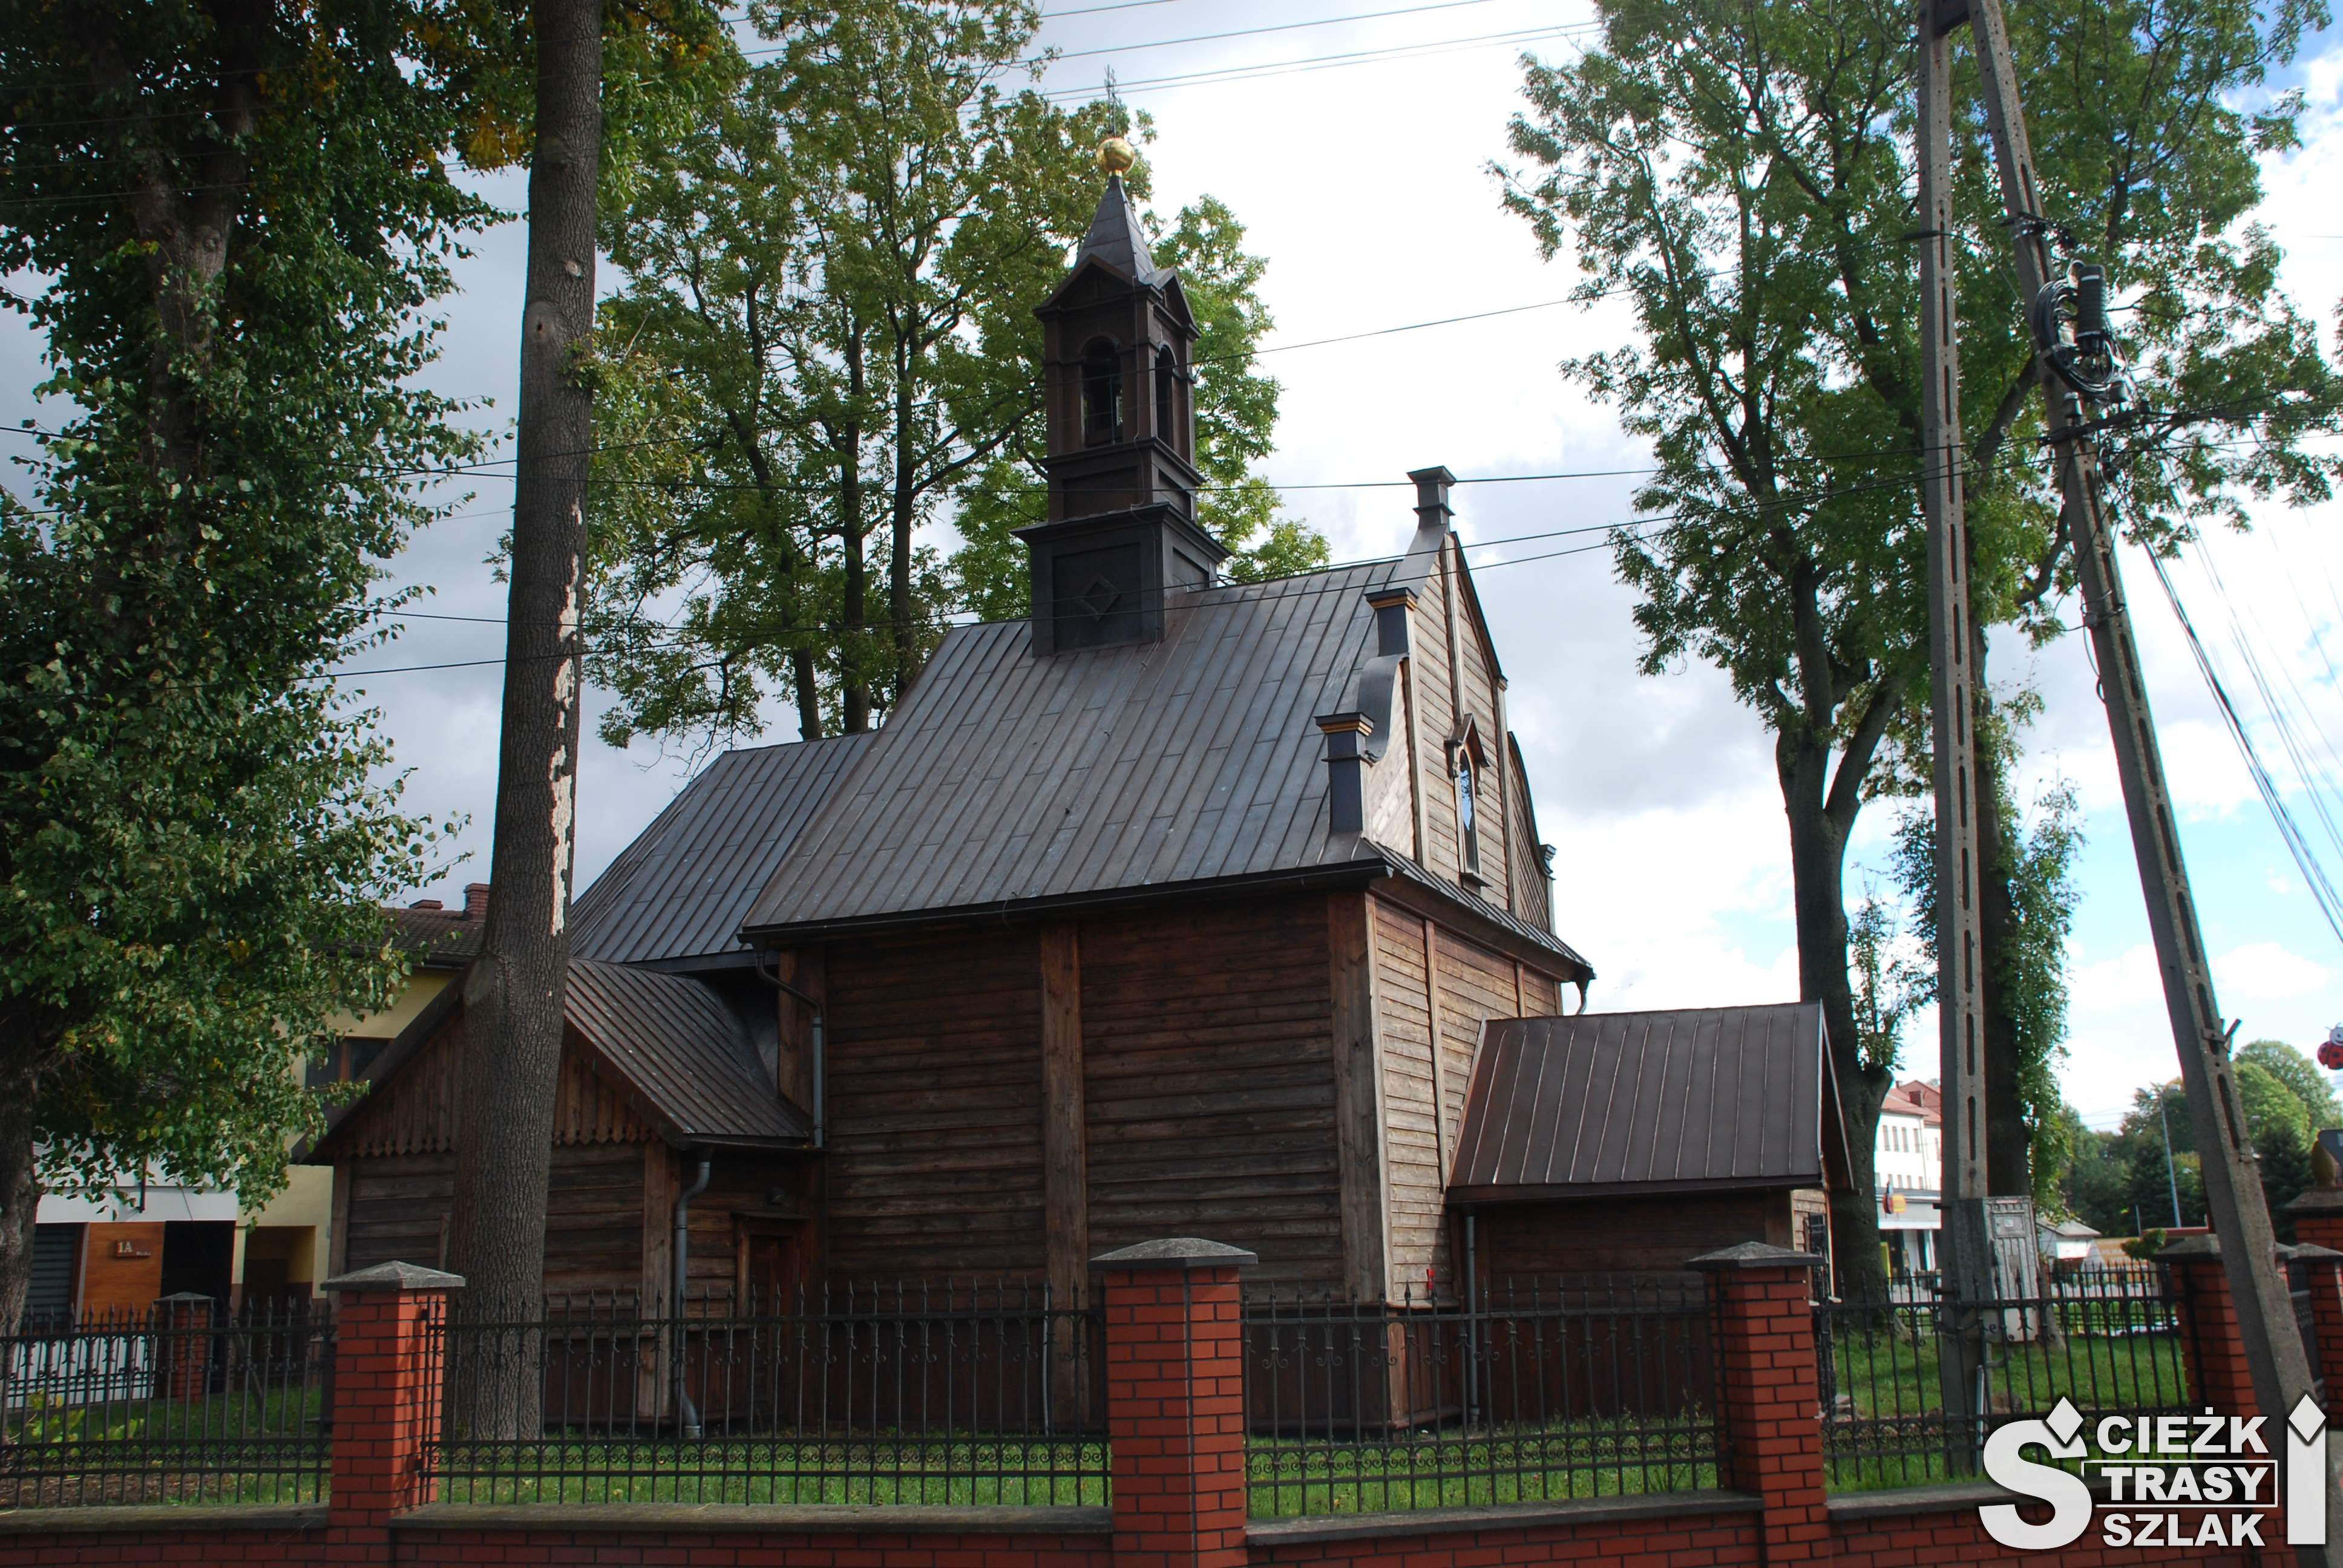 Drewniany kościół Mariacki wielkości kapliczki przydrożnej za ogrodzeniem wśród drzew na szlaku architektury drewnianej Małopolski